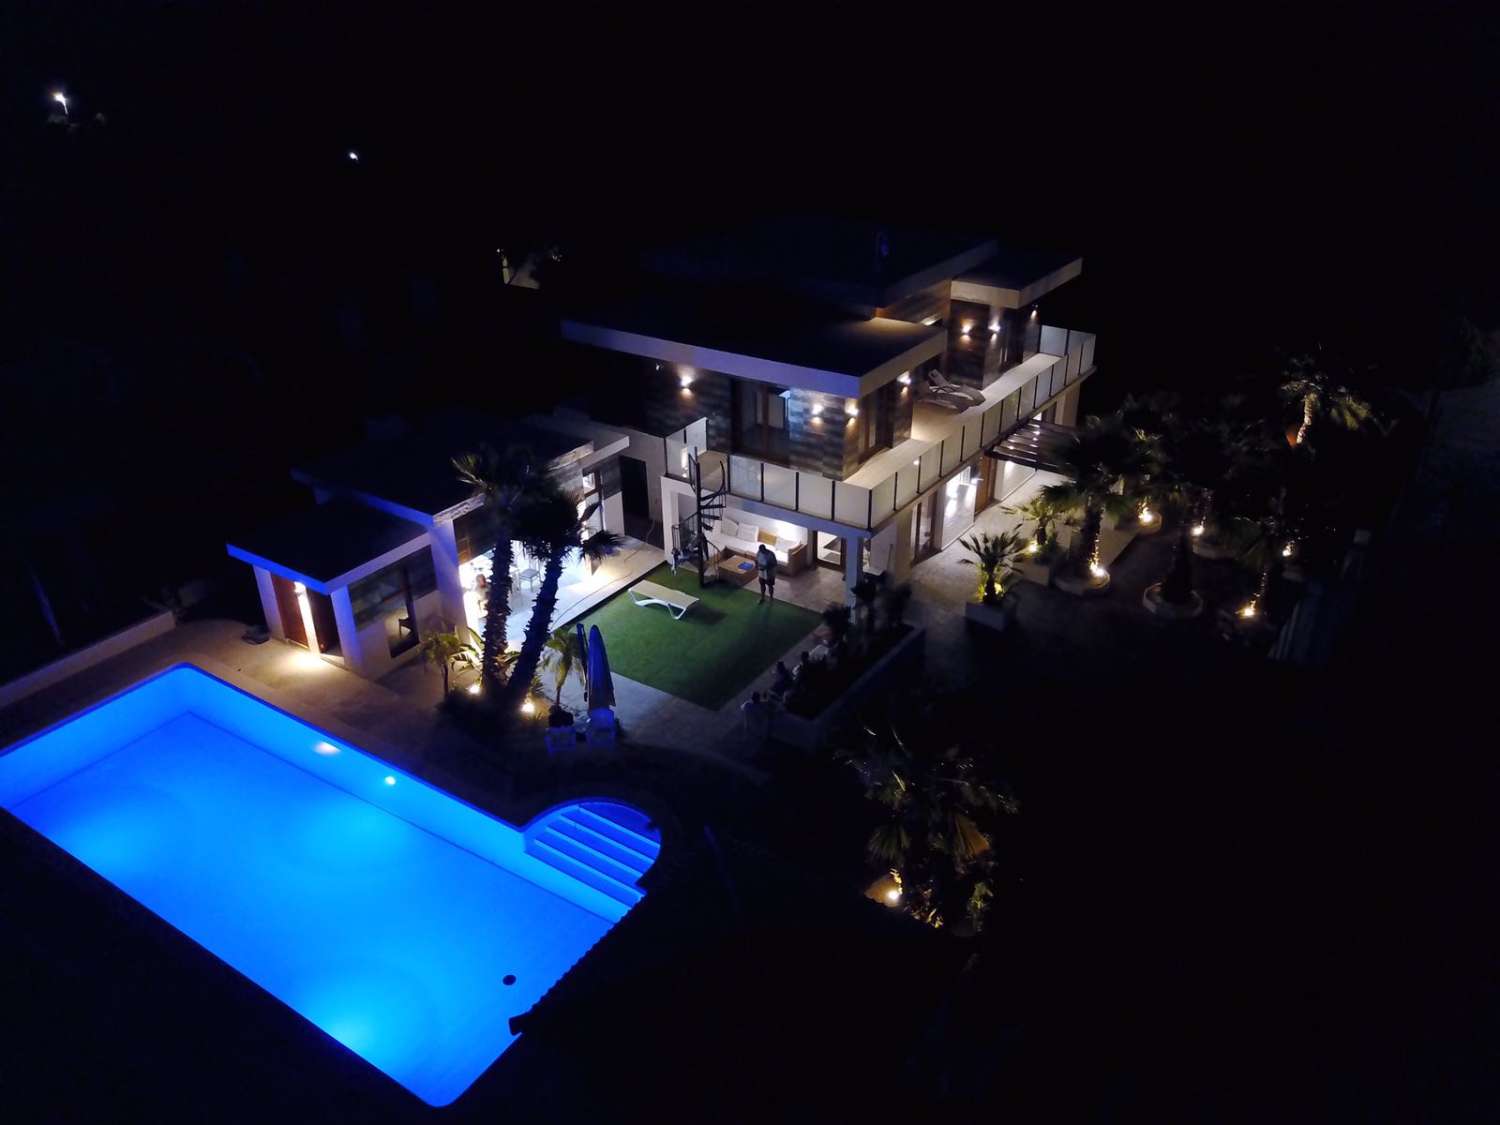 Gran casa moderna amb vistes al mar i gran piscina privada!